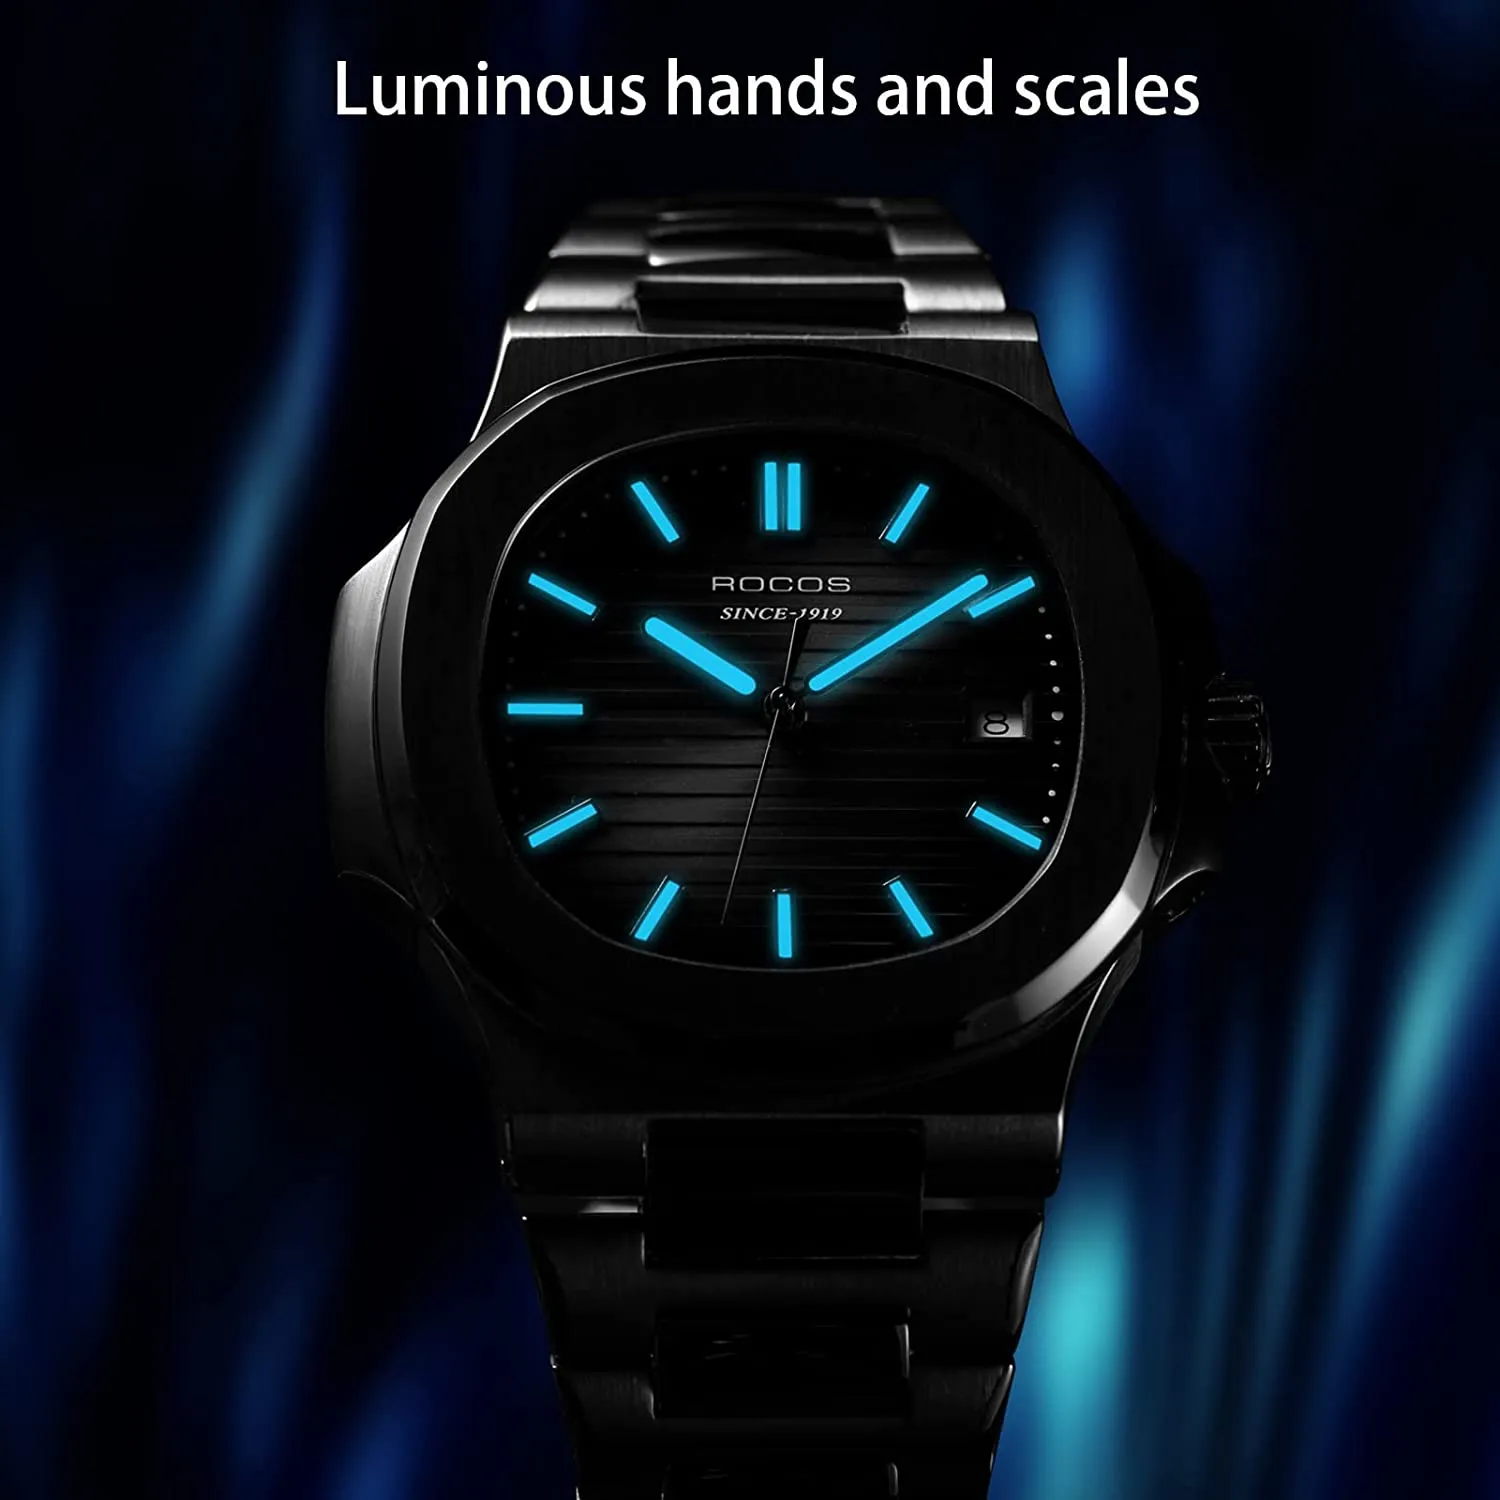 Relógio automático para homens Analog impermeável com aço inoxidável completo Esqueleto de luxo clássico elegante homens relógios de pulso dos homens